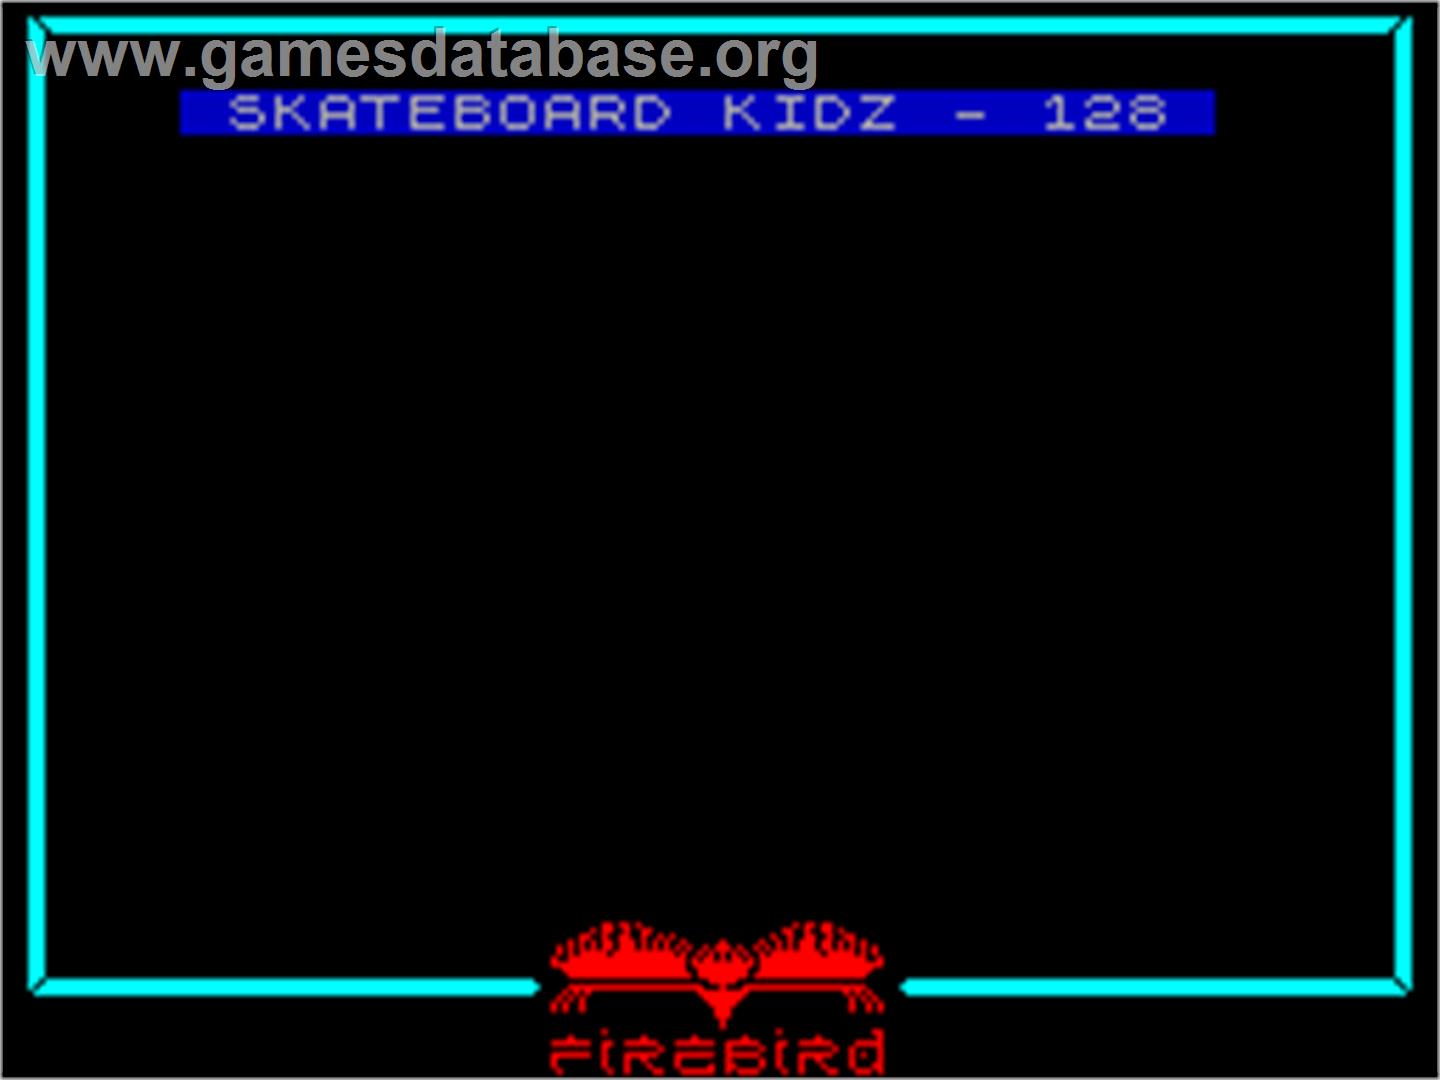 Skateboard Kidz - Sinclair ZX Spectrum - Artwork - Title Screen